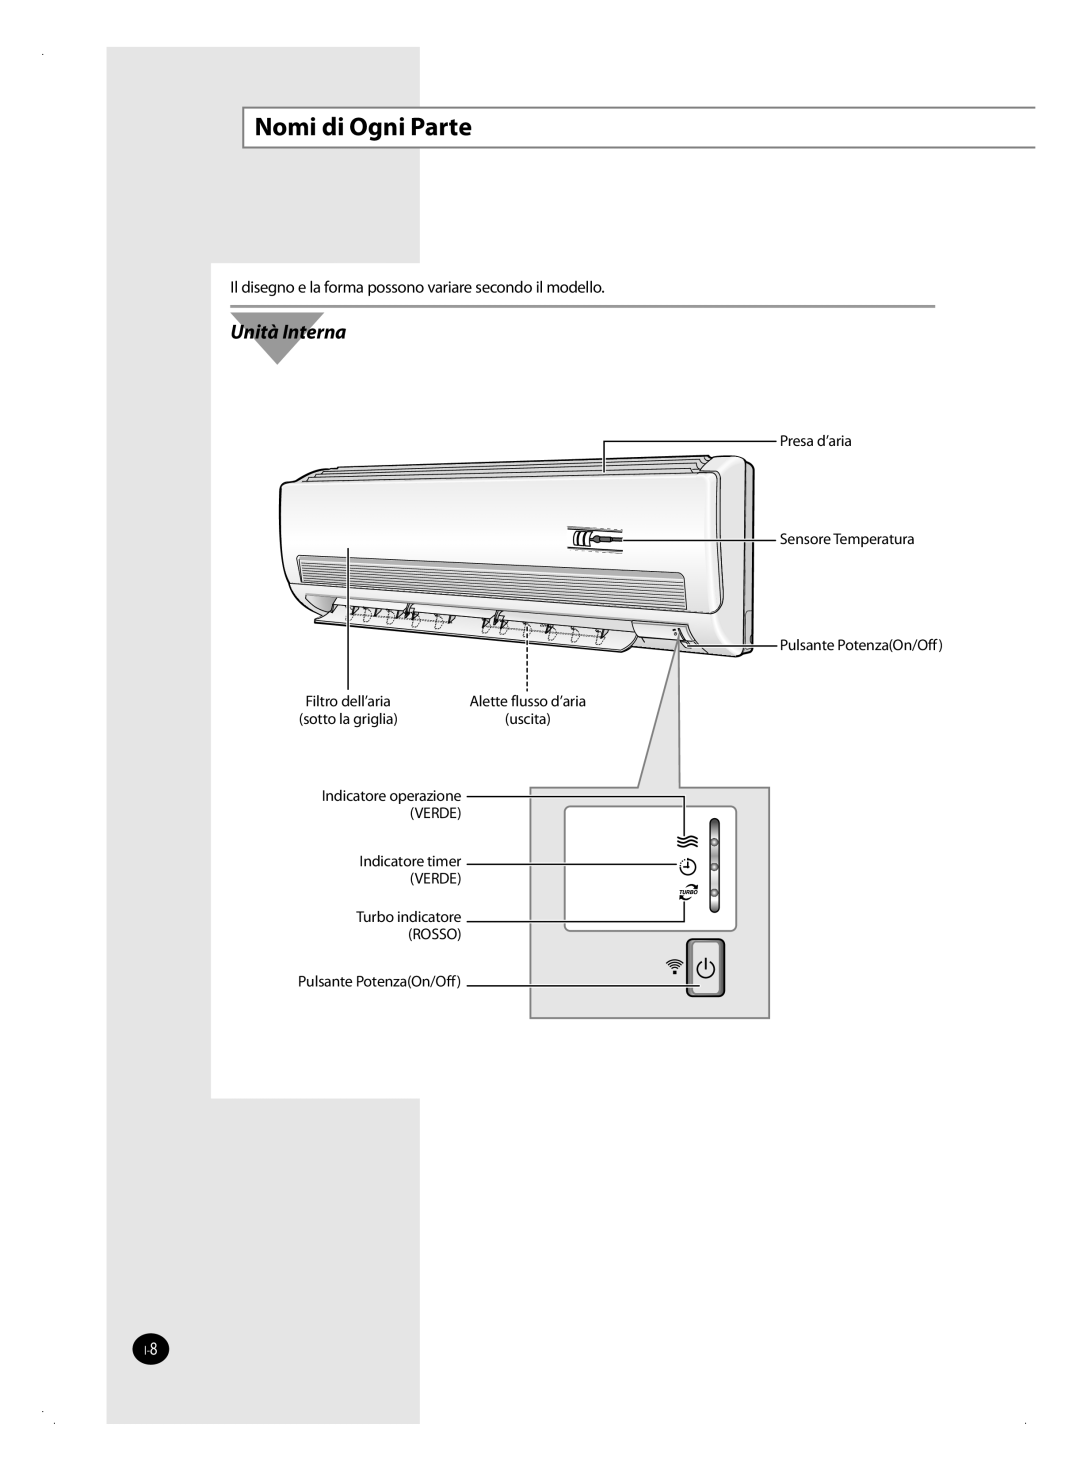 Samsung AQV24FAX manual Nomi di Ogni Parte, Unità Interna, Il disegno e la forma possono variare secondo il modello, uscita 